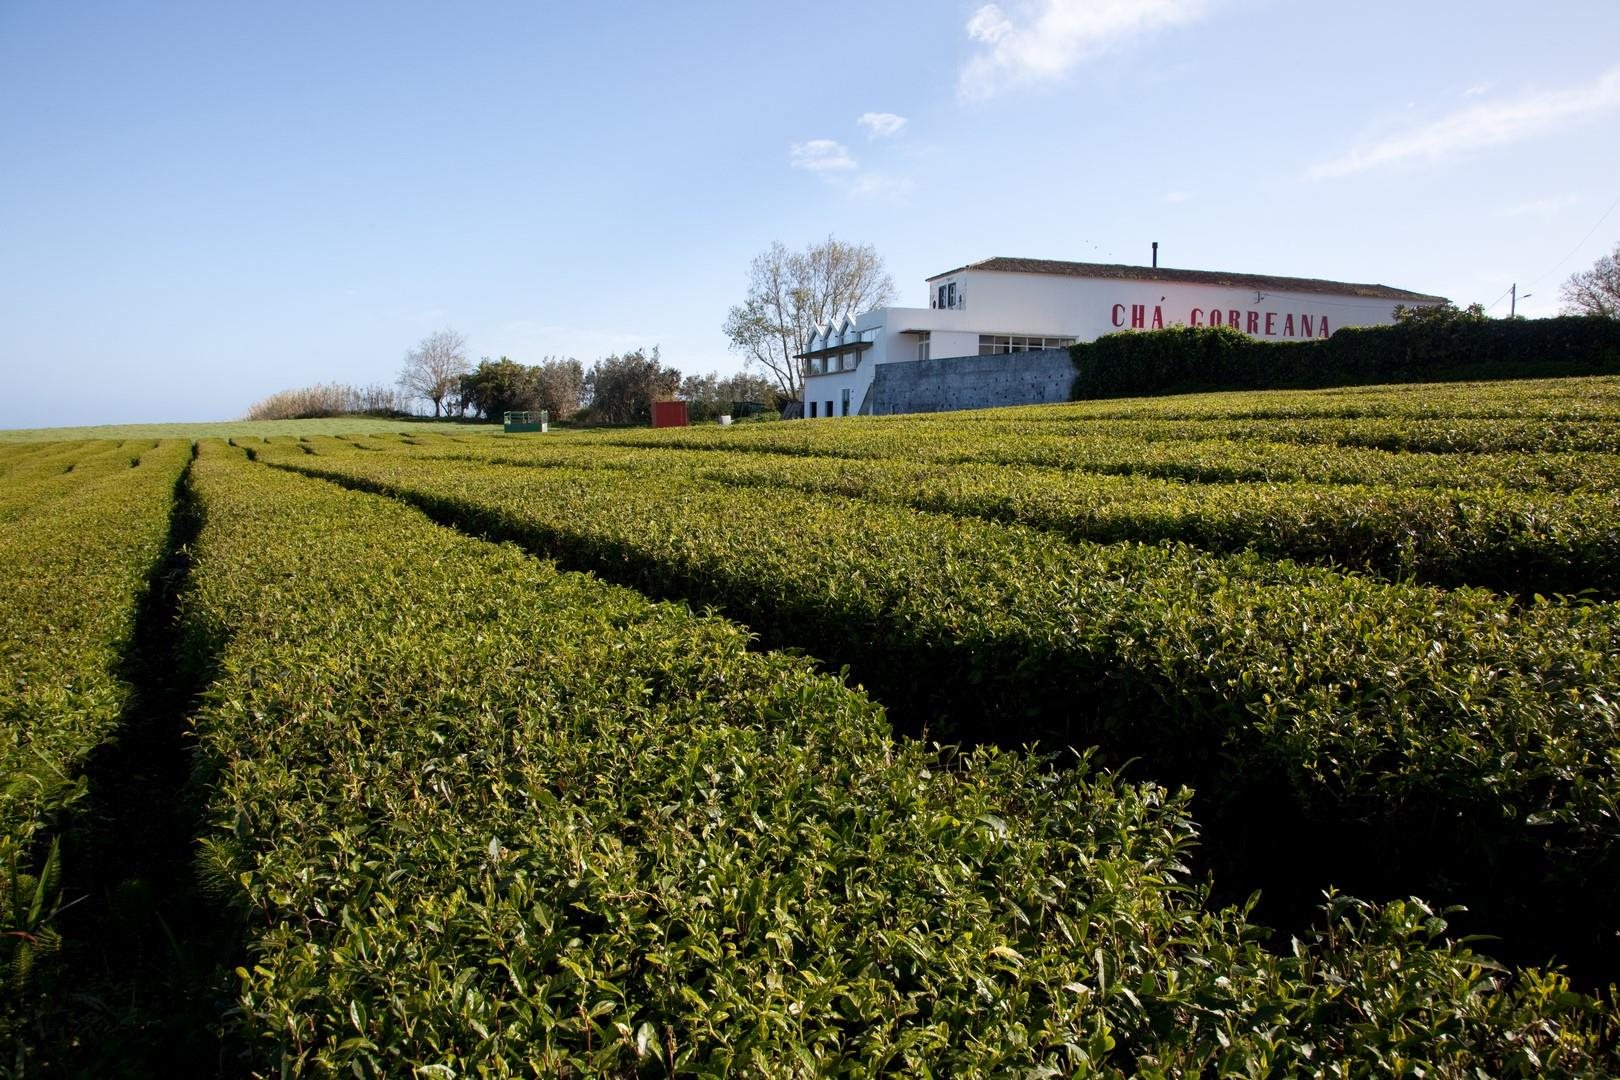 Gorreana Tea Factory 1 - São Miguel Island